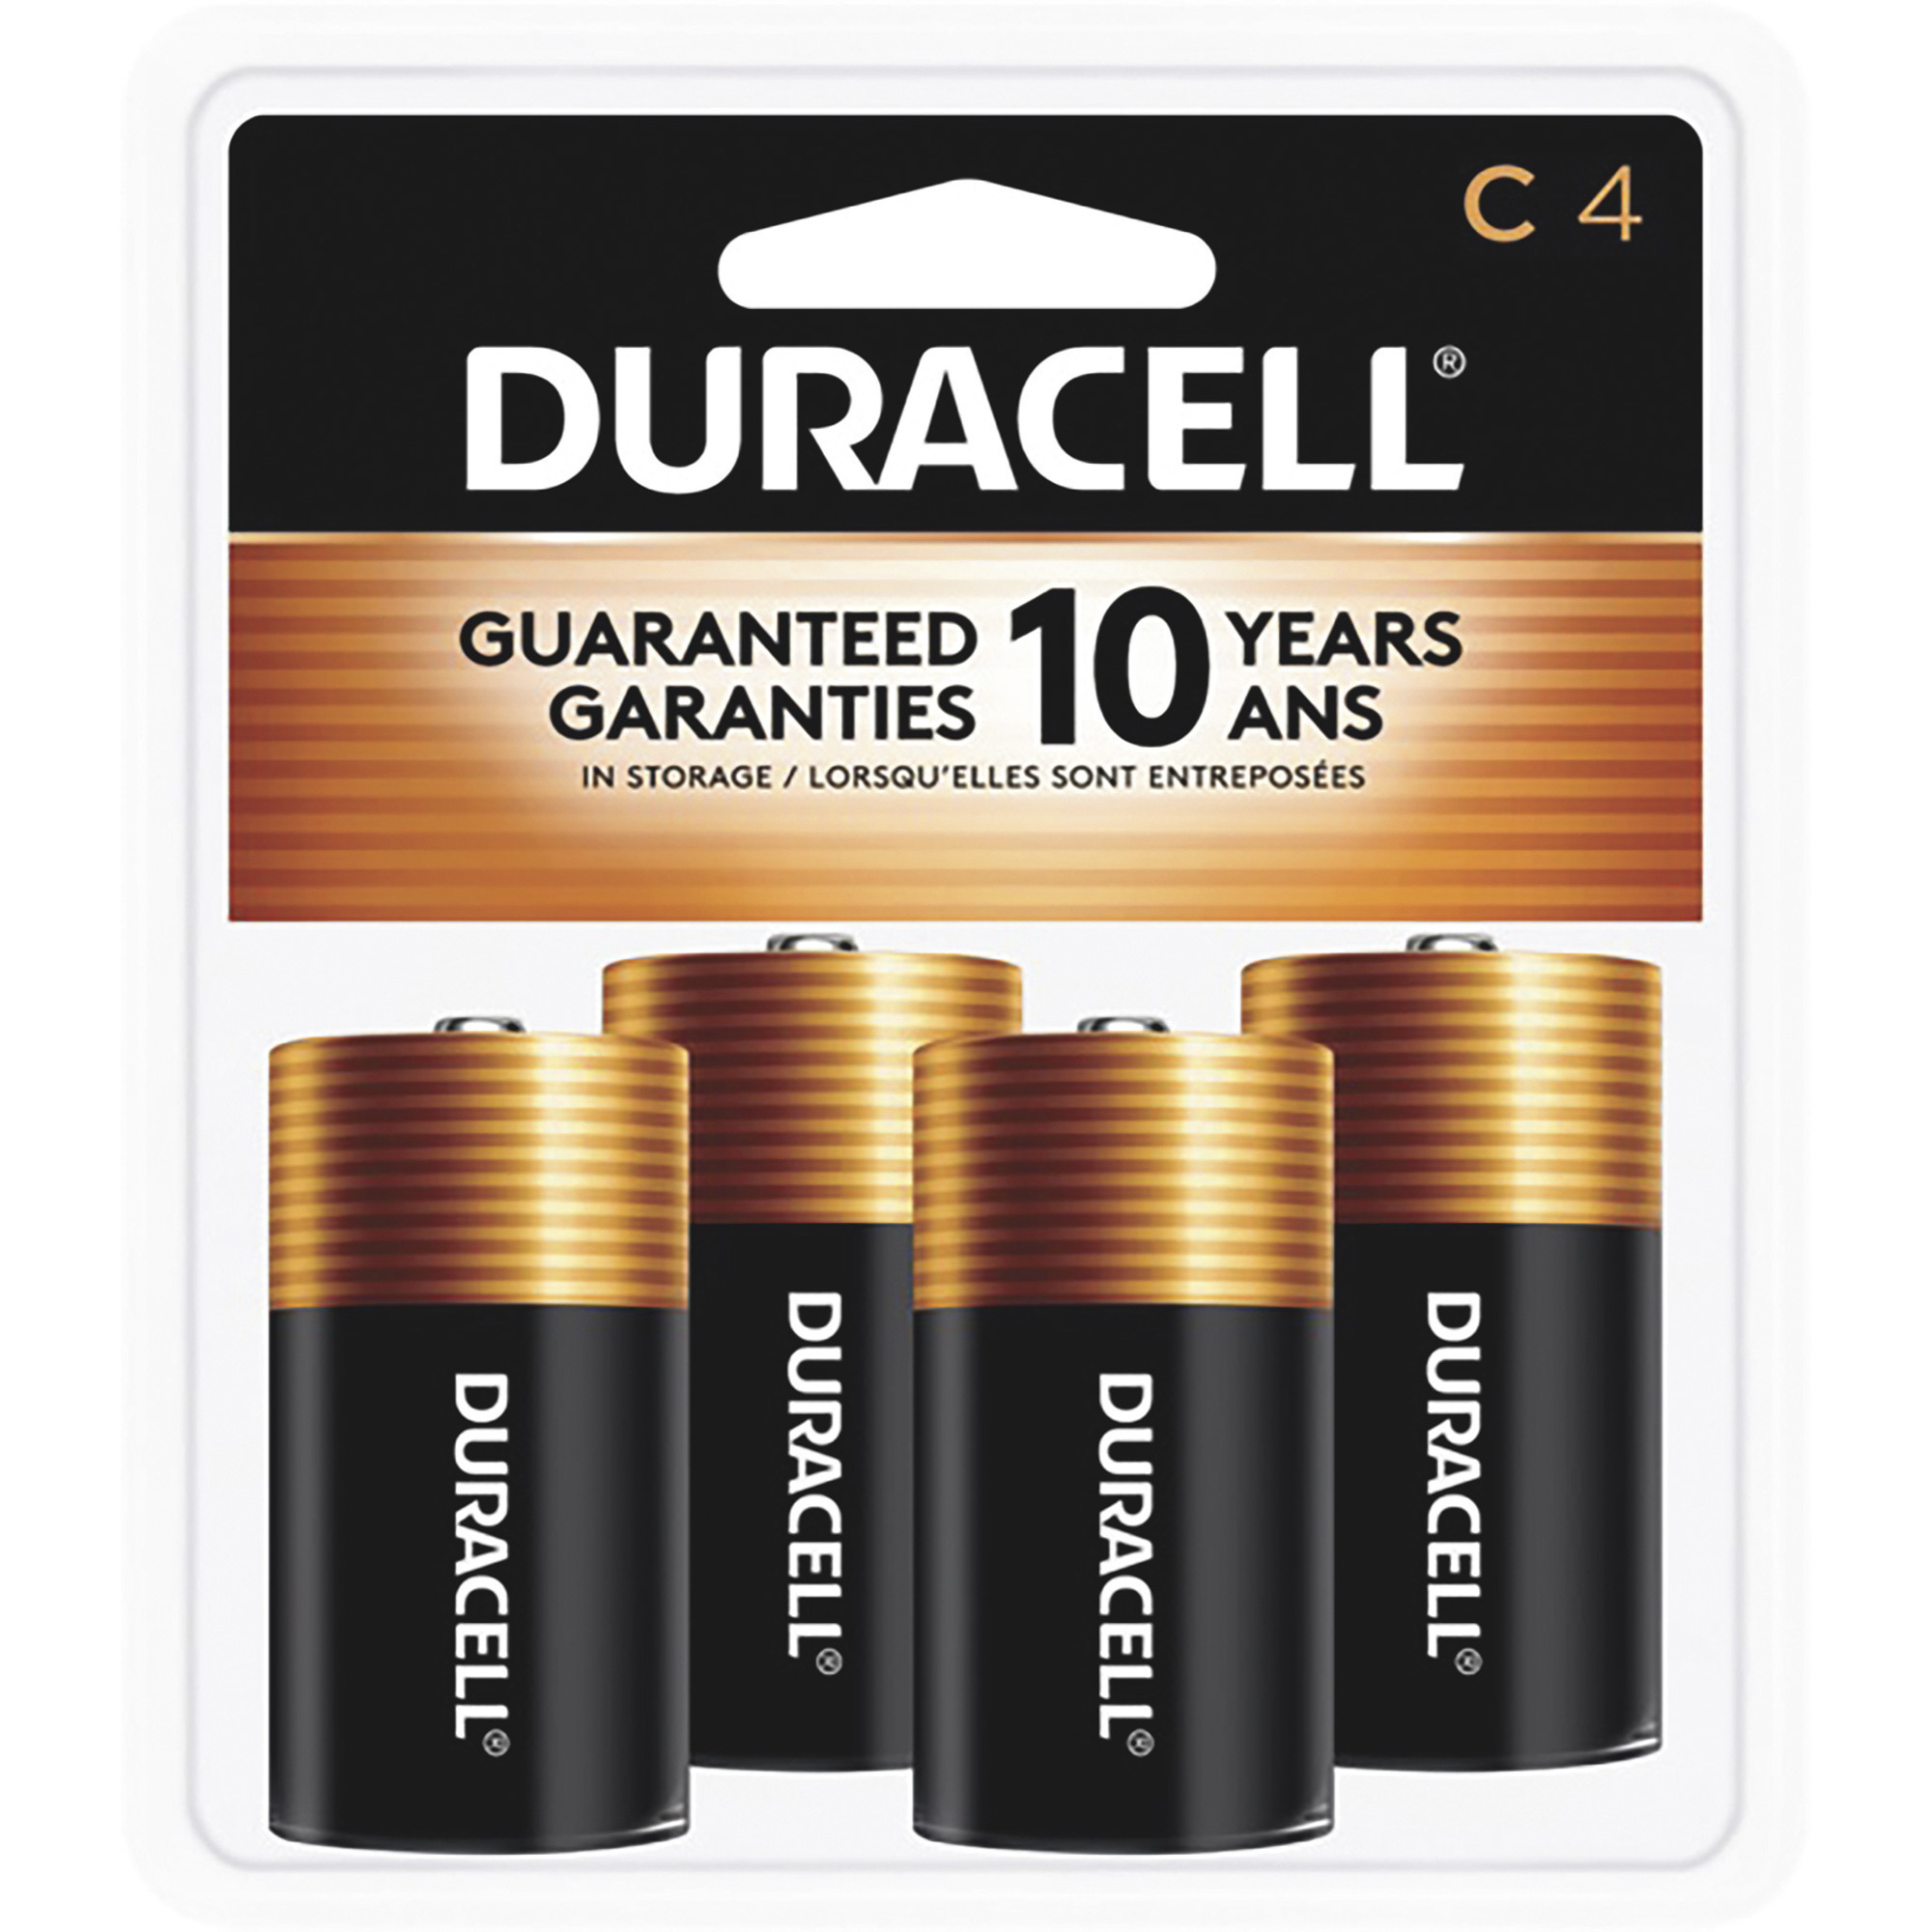 Duracell Coppertop C Batteries â 4-Pack